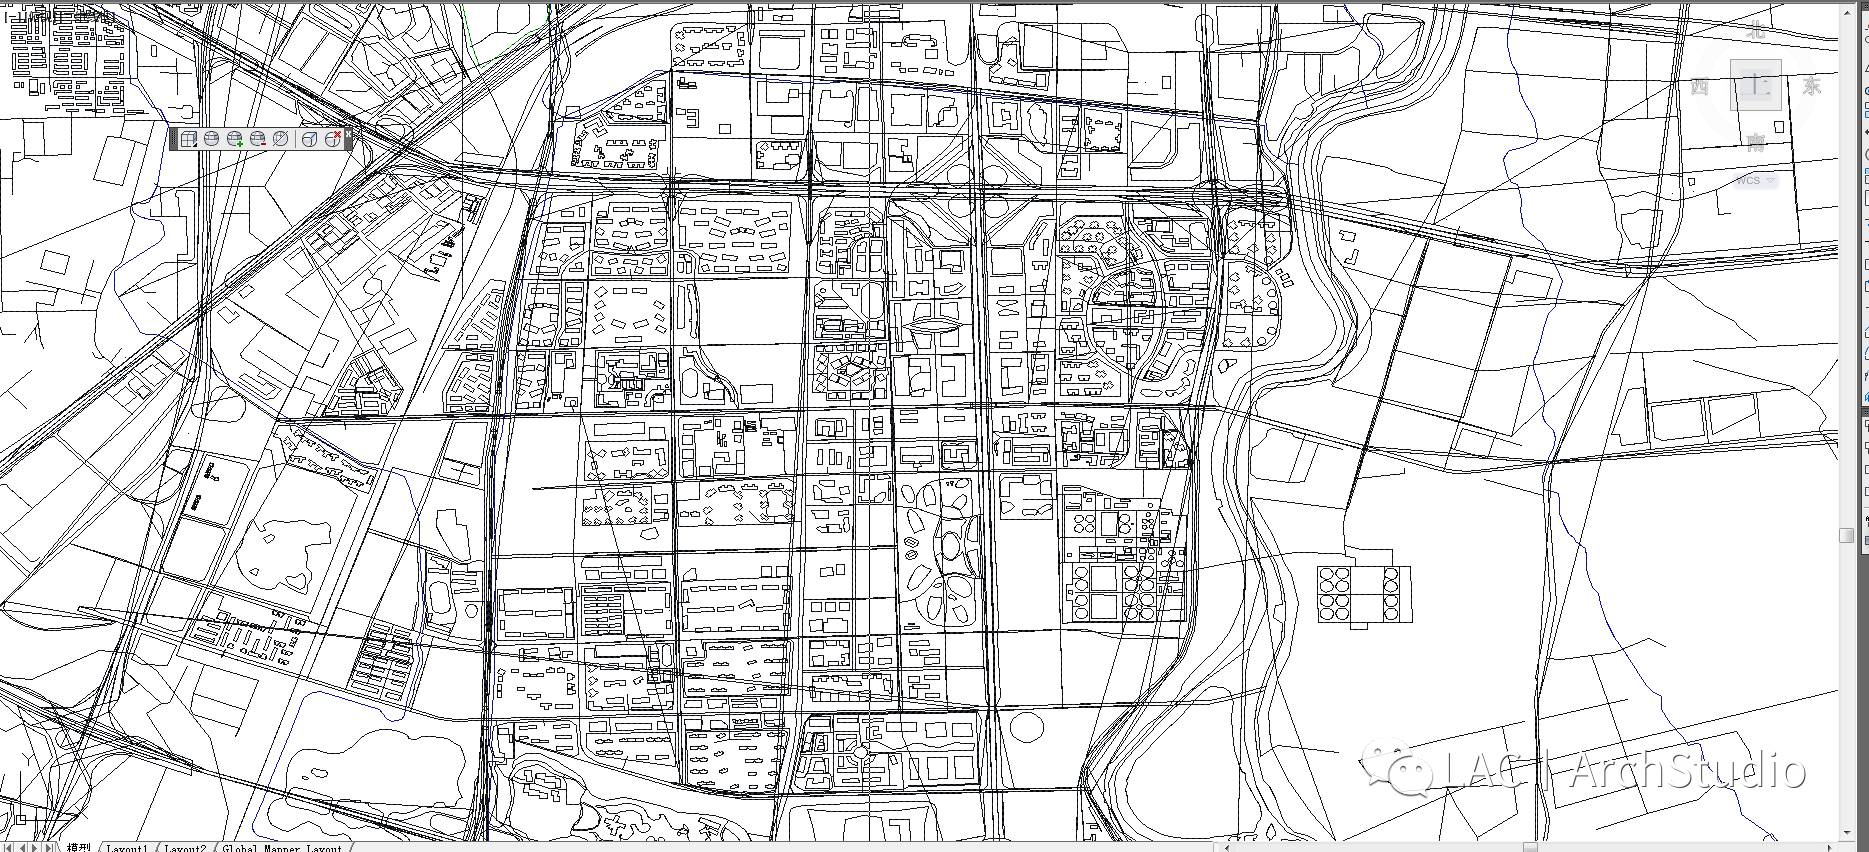 总结:这是可以下载中国十个主要城市的cad地图,那如何做到任何地区的